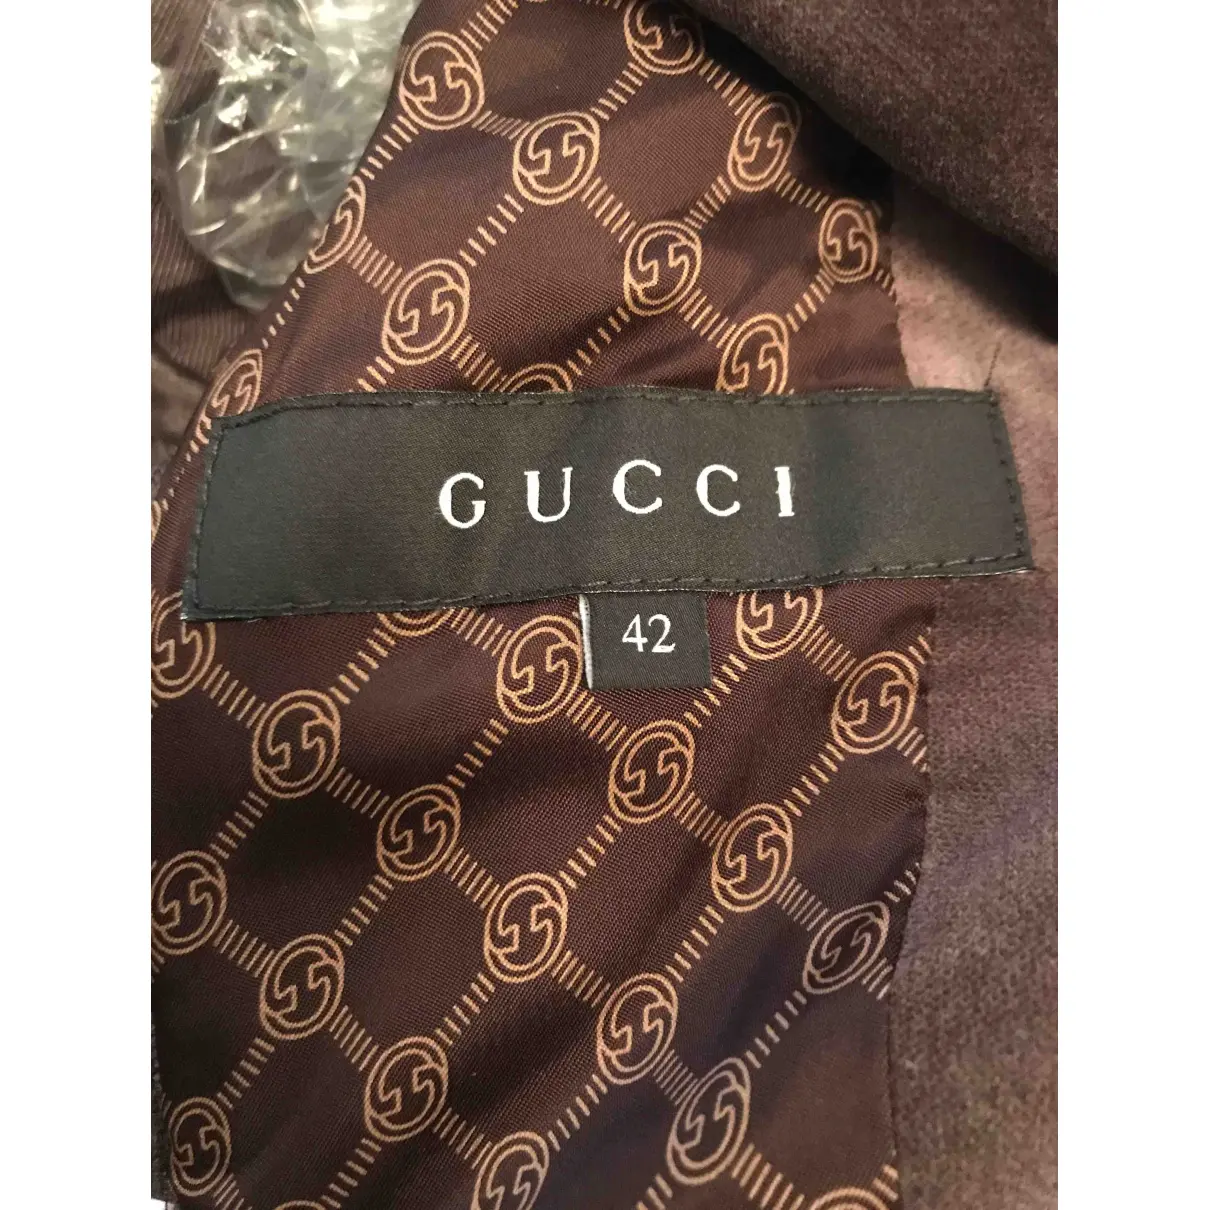 Velvet suit jacket Gucci - Vintage